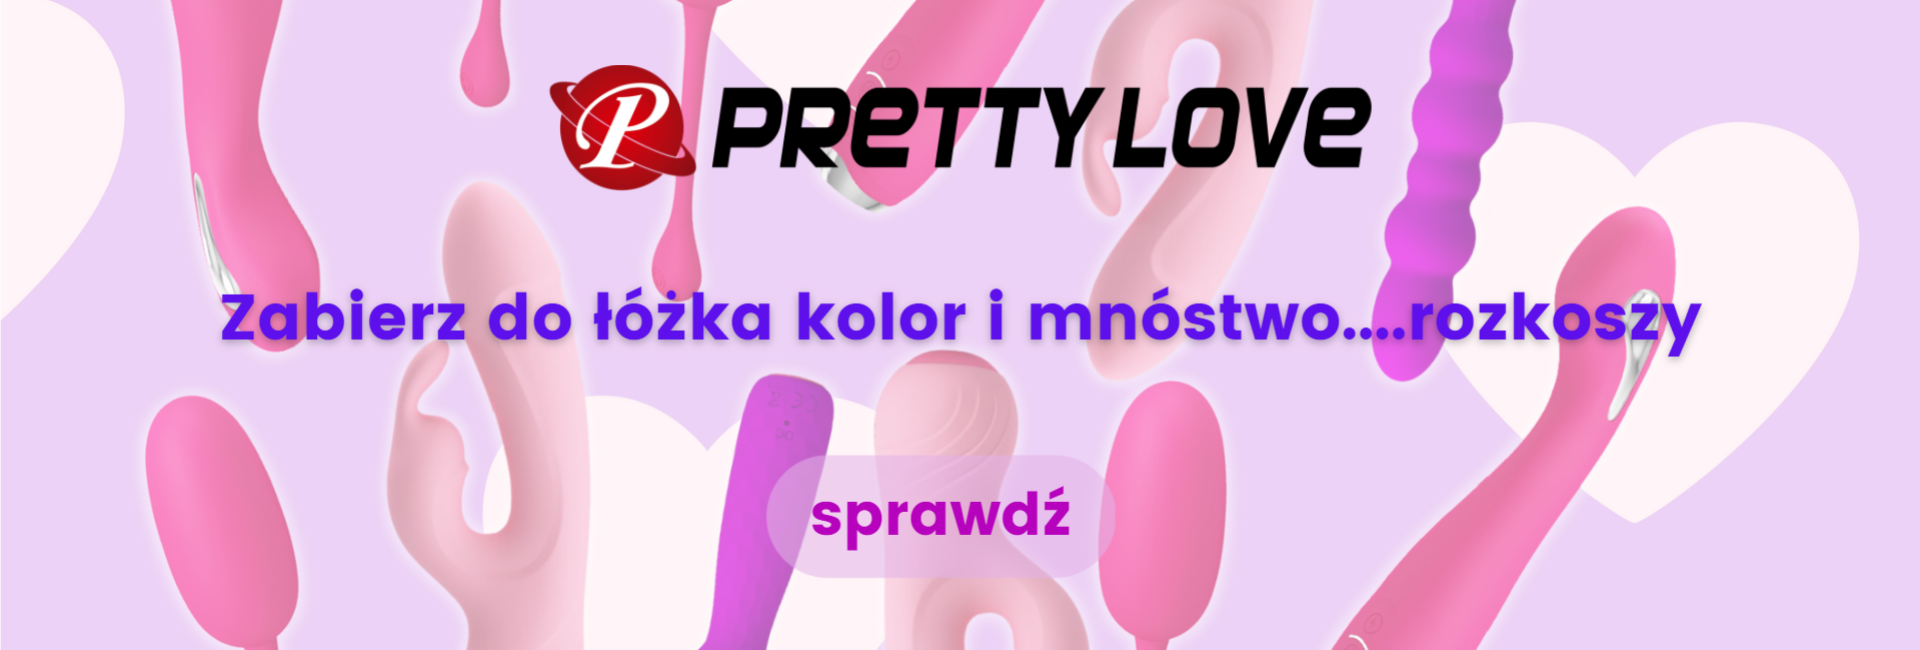 WildPlay-Nowe-Bannery-Slider-Glowny_Pretty-Love(1)